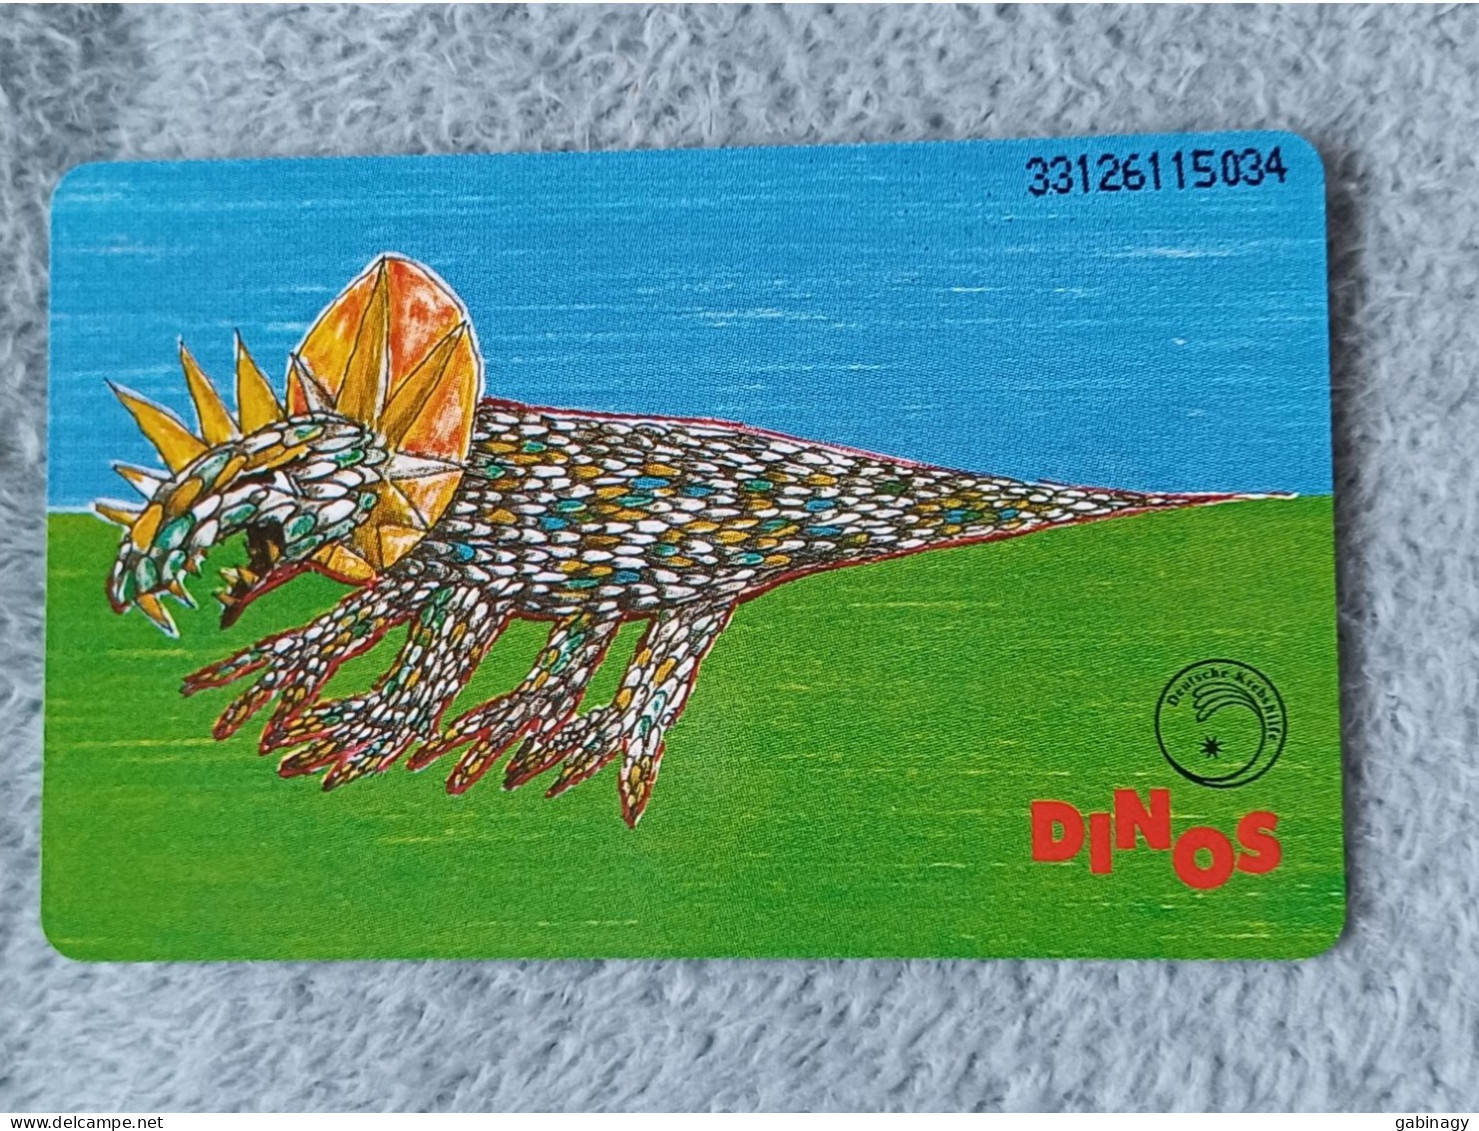 GERMANY-1020 - O 0528D 93 - Deutsche Krebshilfe - Kinder Malen Dinosaurier 4 - DINOAURS - 5.000ex. - K-Series: Kundenserie